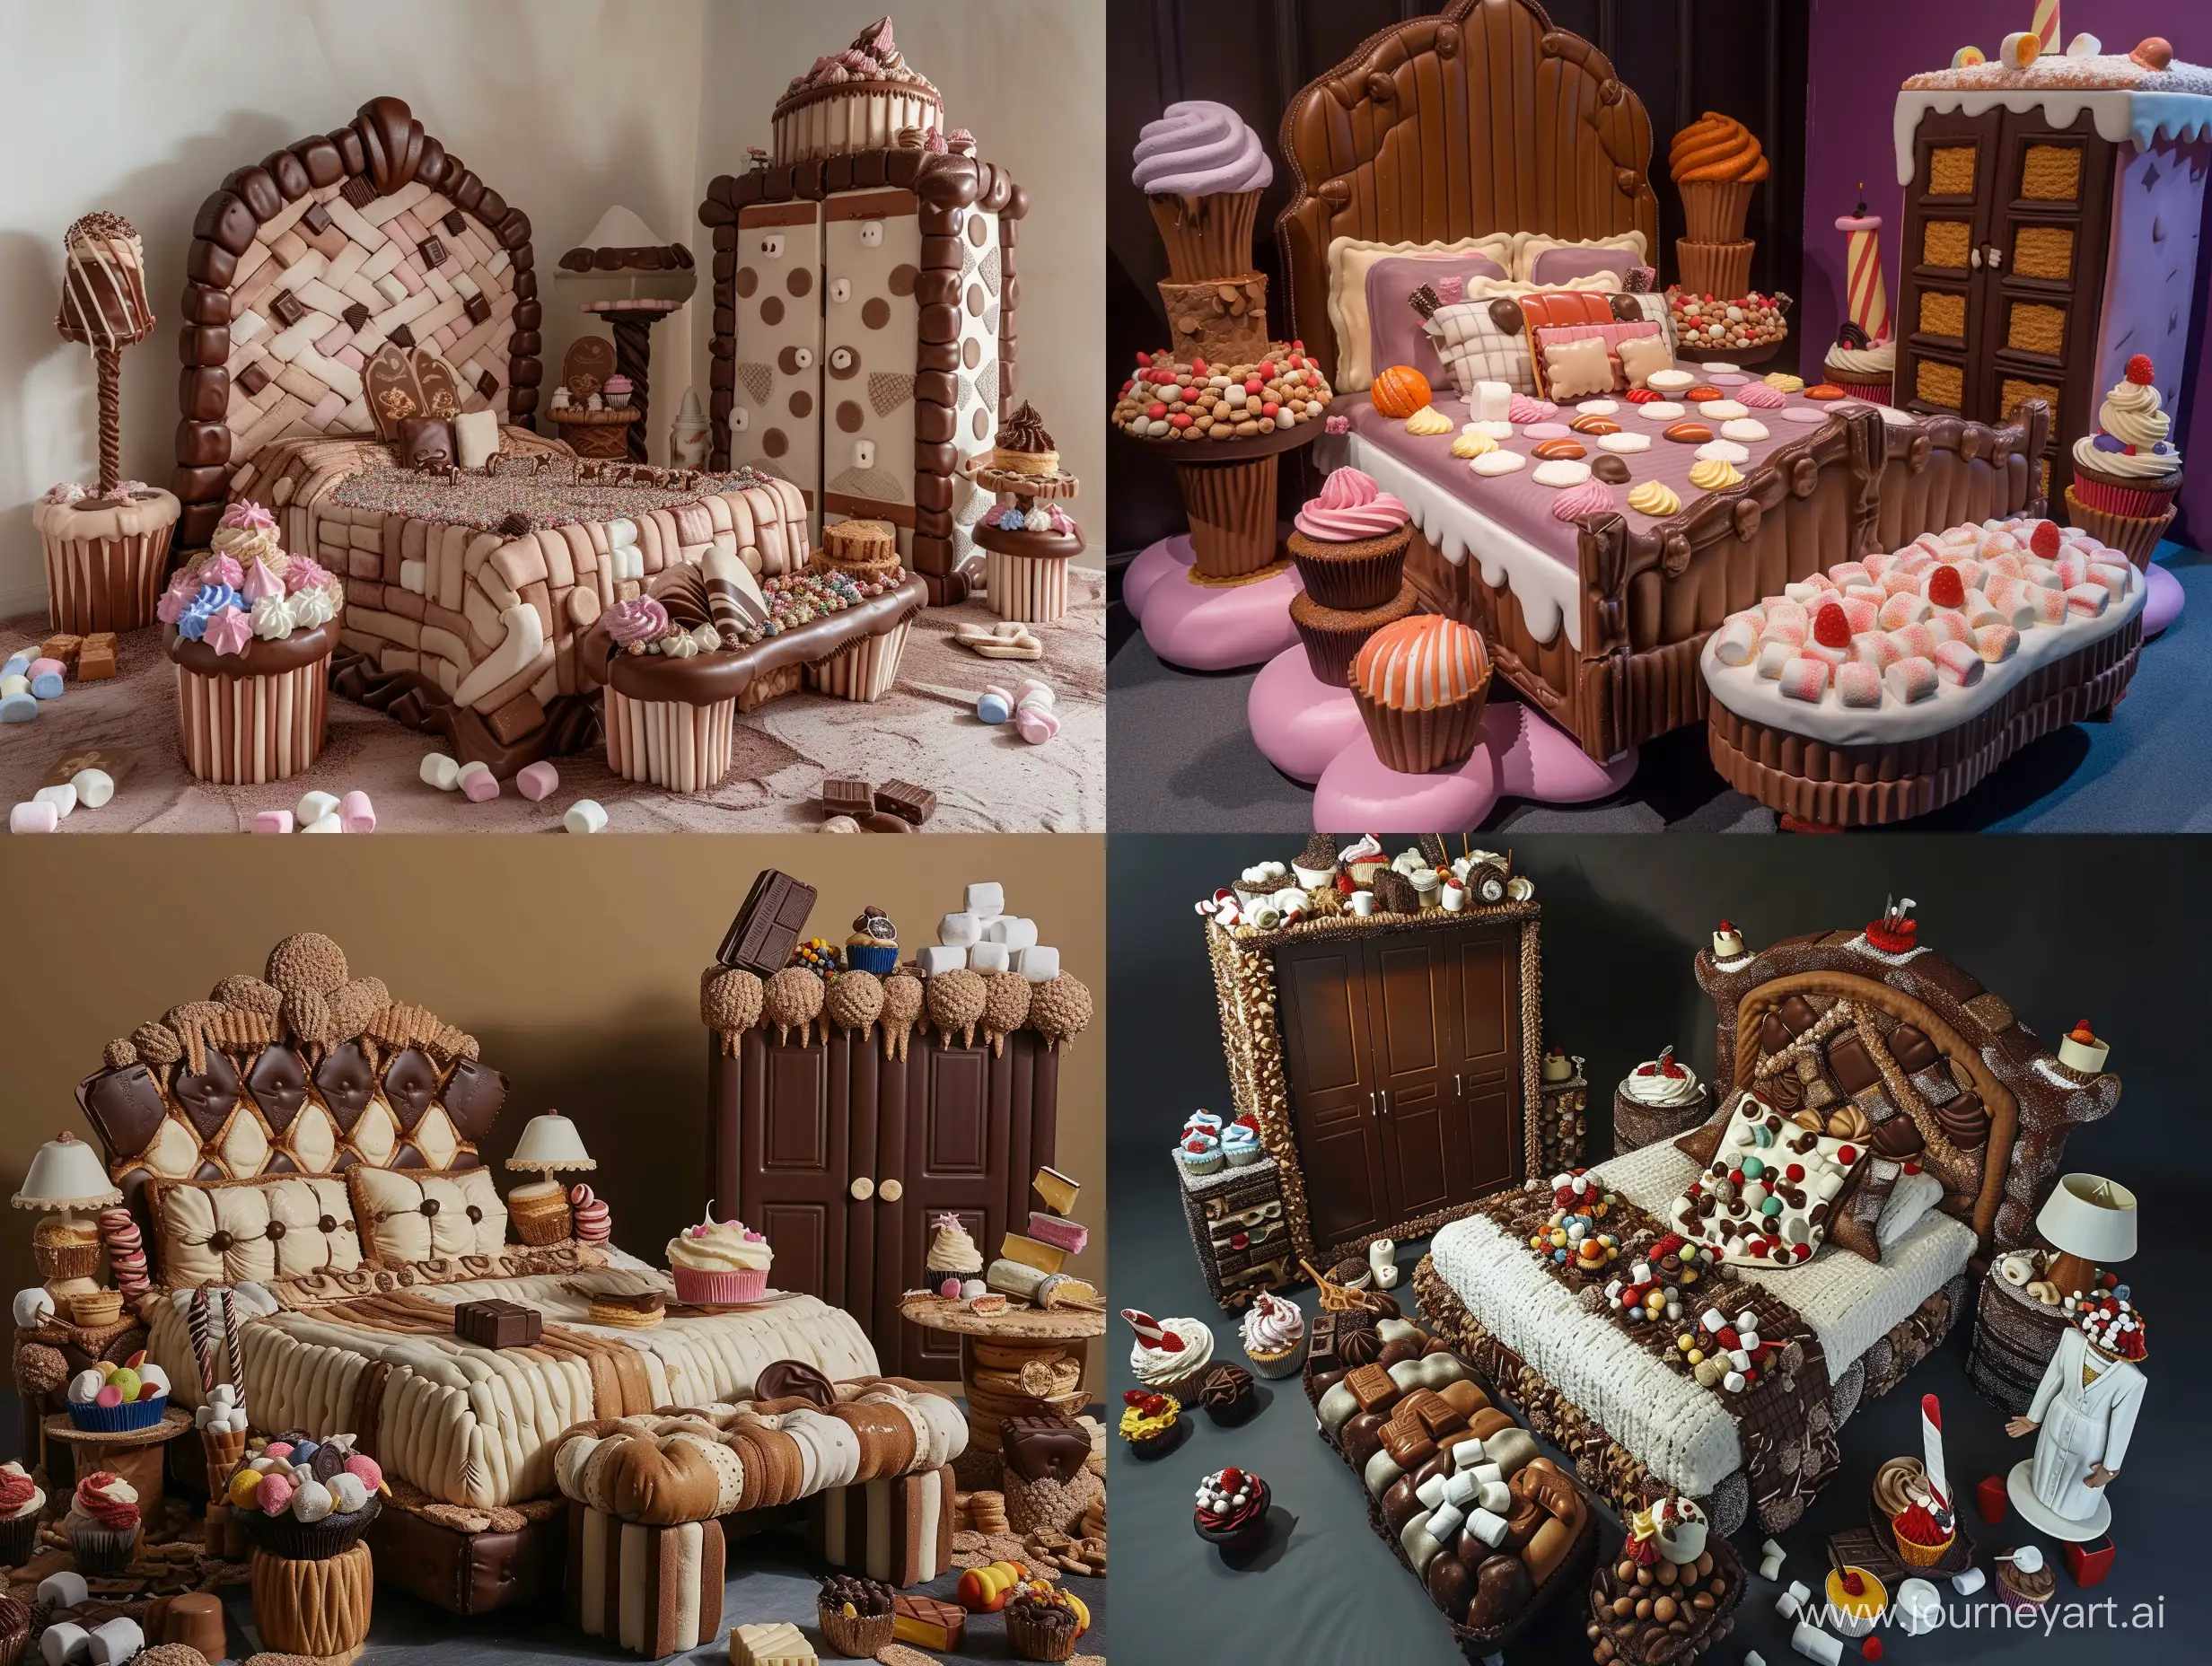 Whimsical-Dessert-Wonderland-Bedroom-Sweet-Dreams-Delight